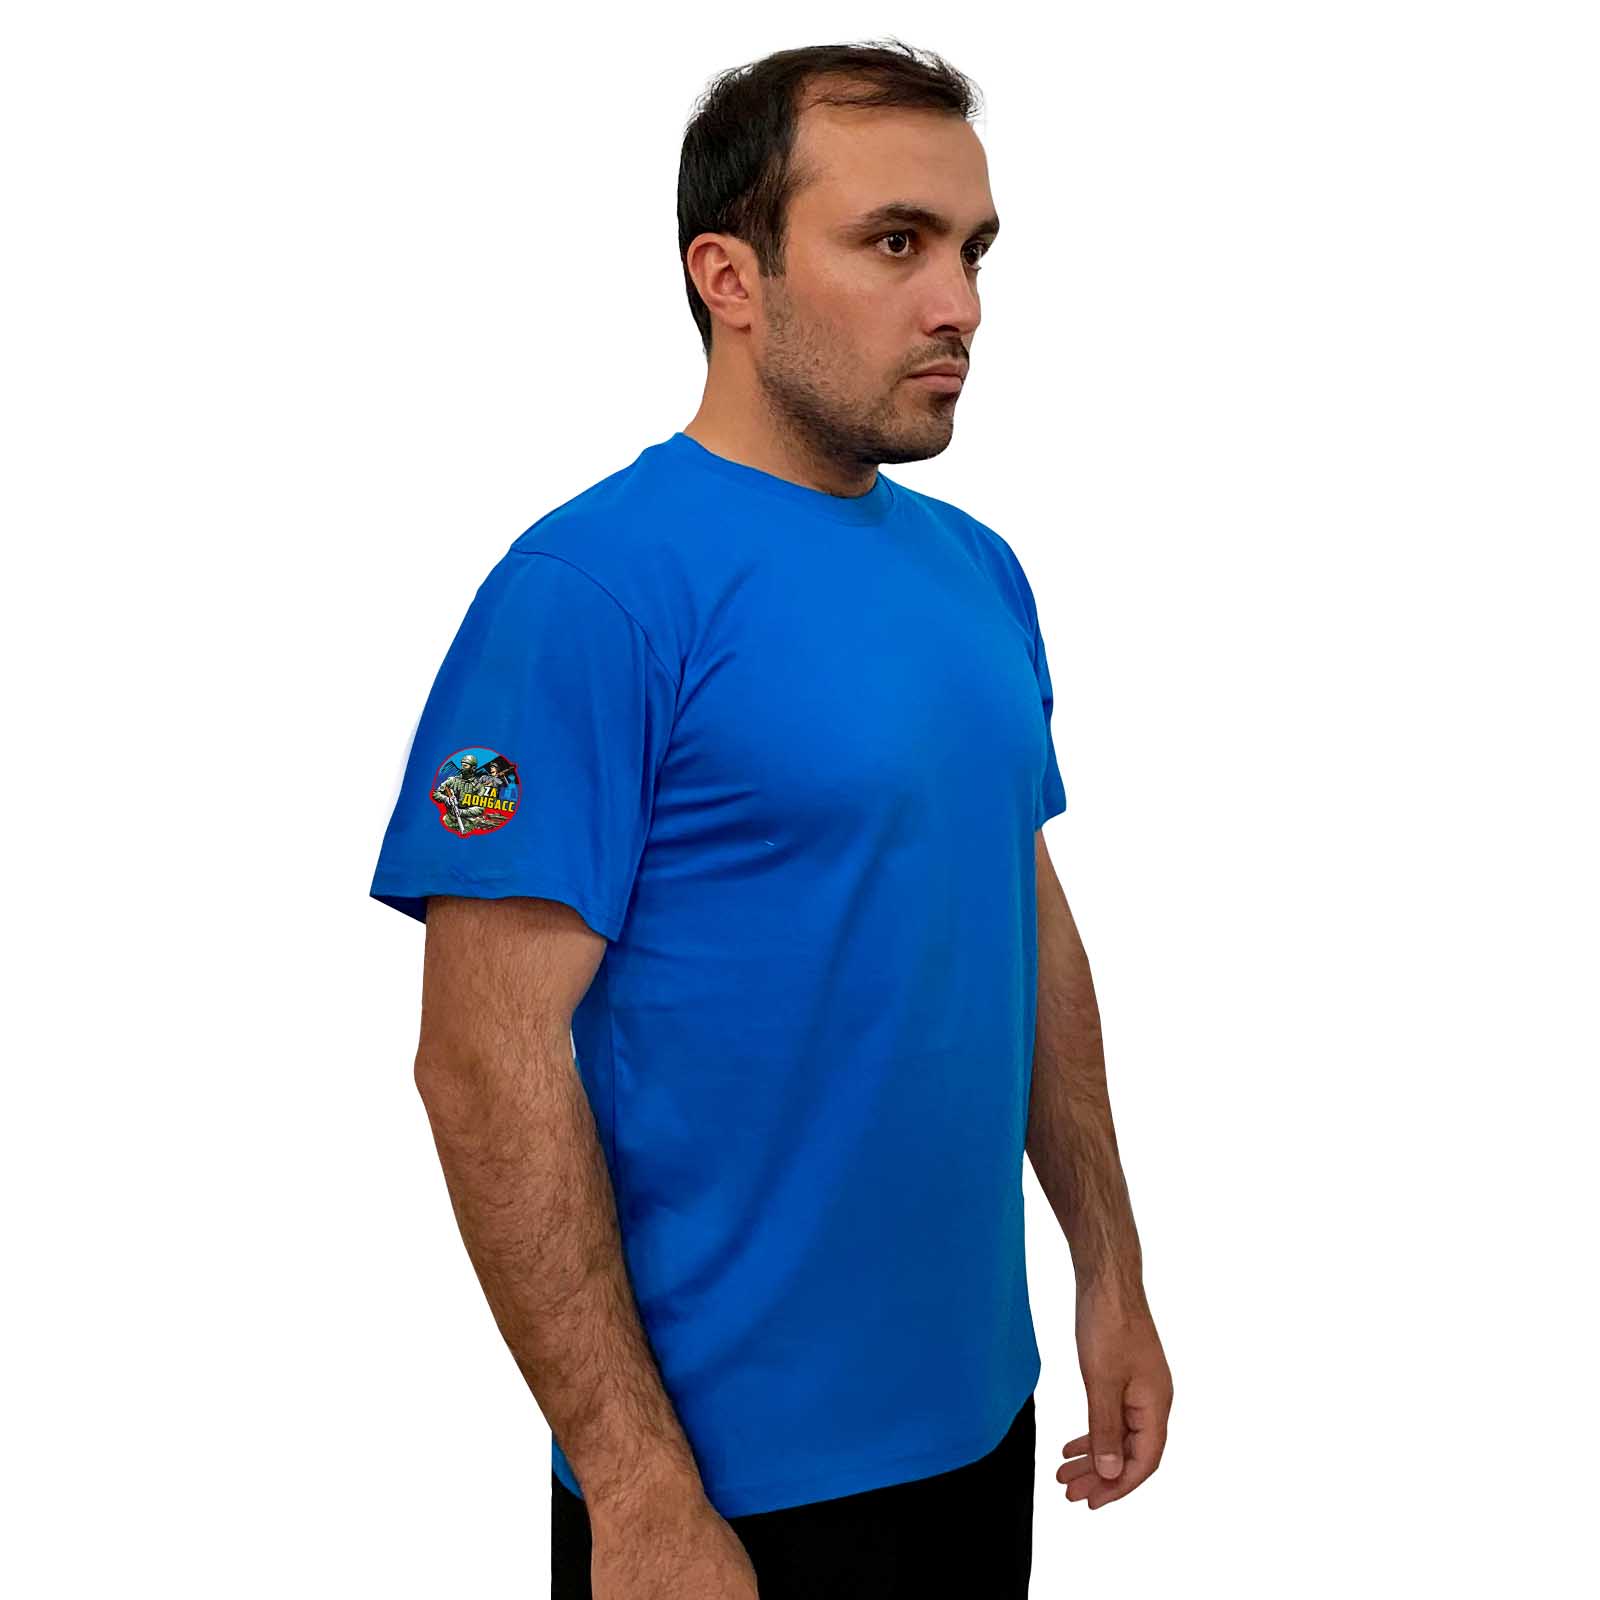 Купить строгую голубую футболку Zа Донбасс онлайн выгодно